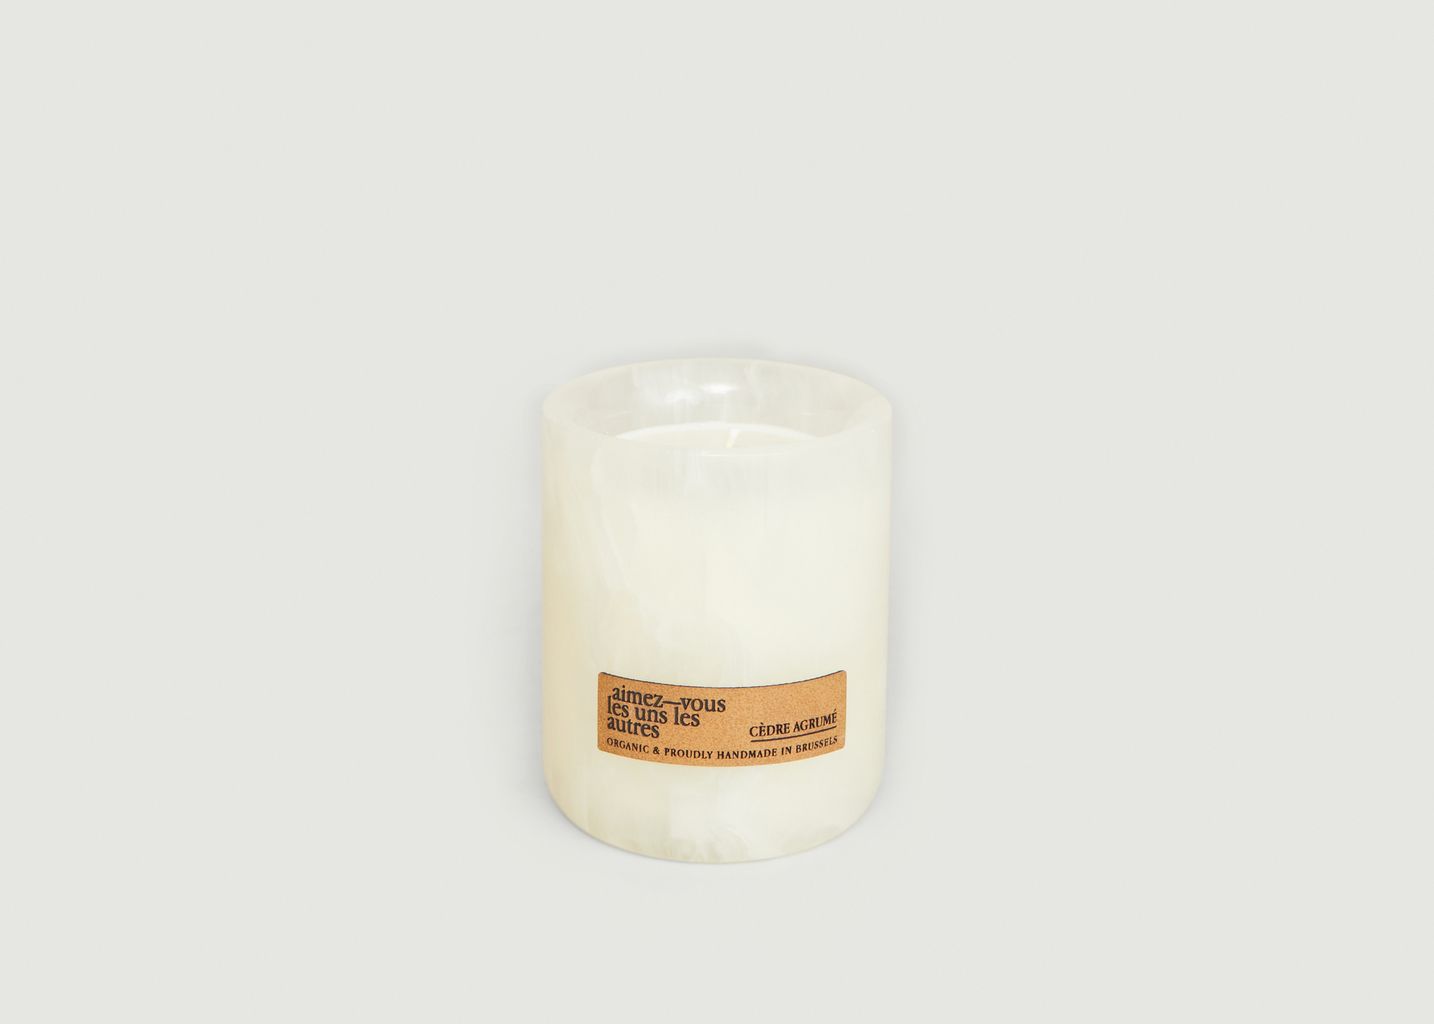 White Onyx - Bergamot Cedar Candle  - Aimez-Vous les Uns les autres